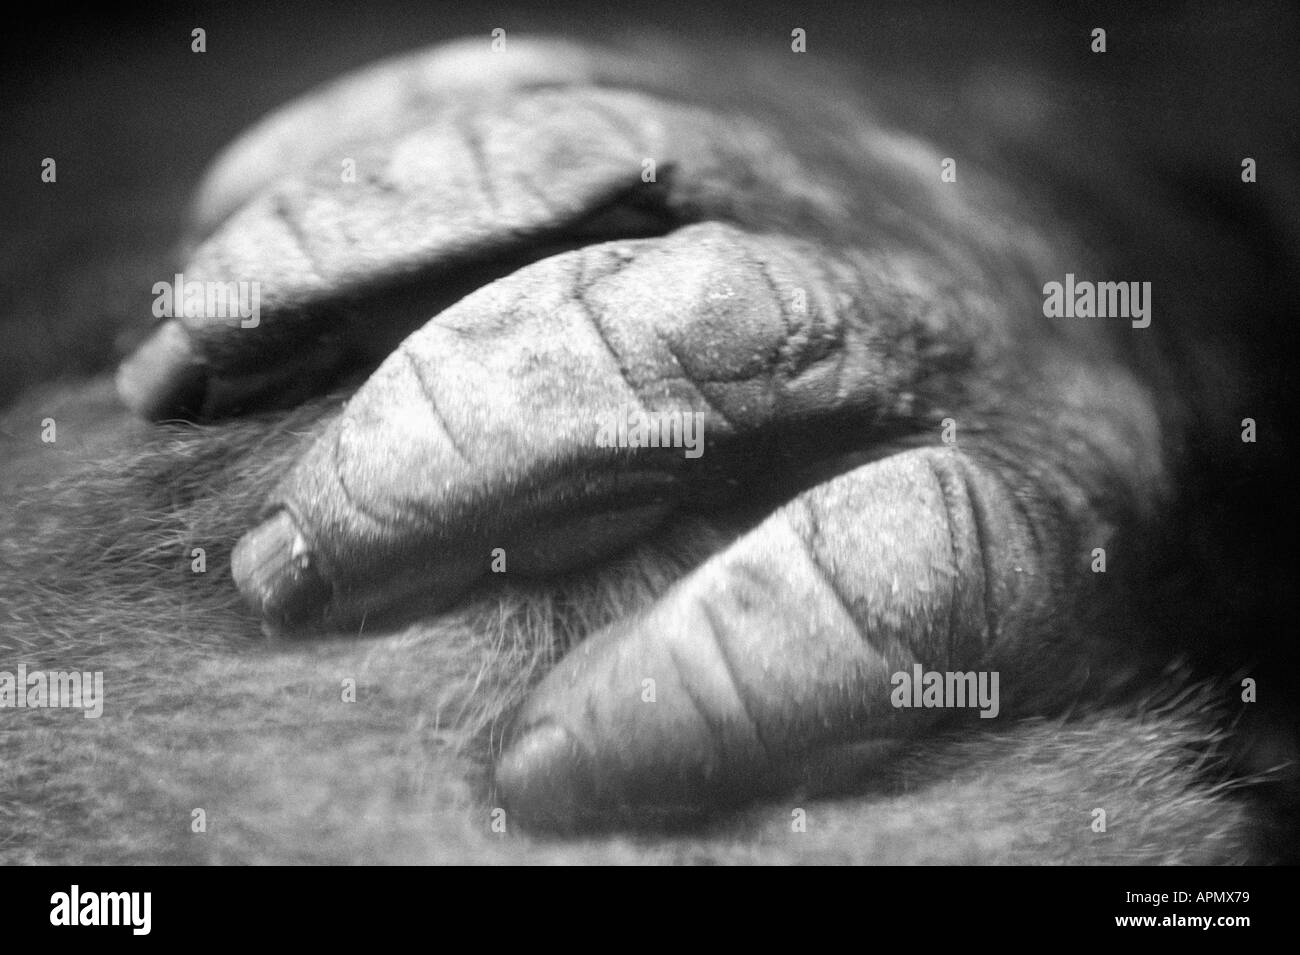 Primate's hand Stock Photo